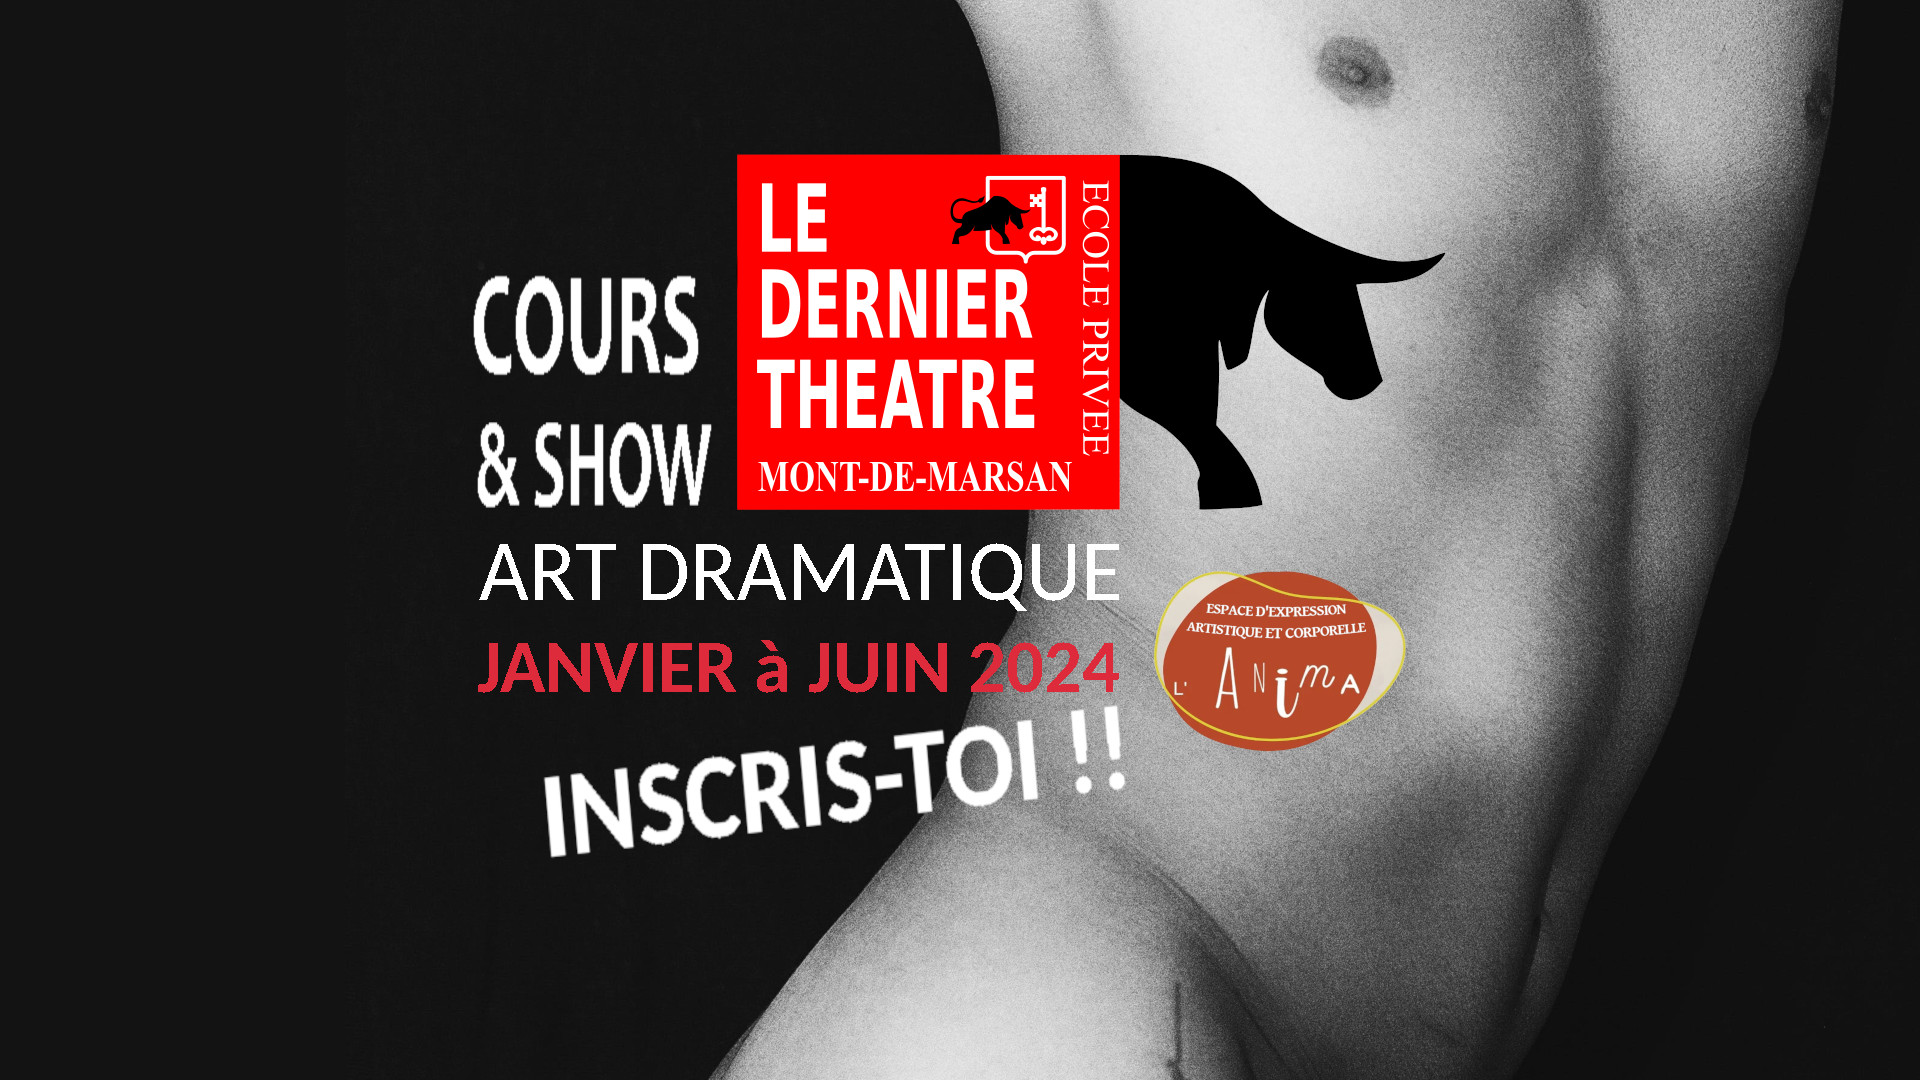 Le dernier théâtre - École privée art Dramatique - Cours & Show 2024